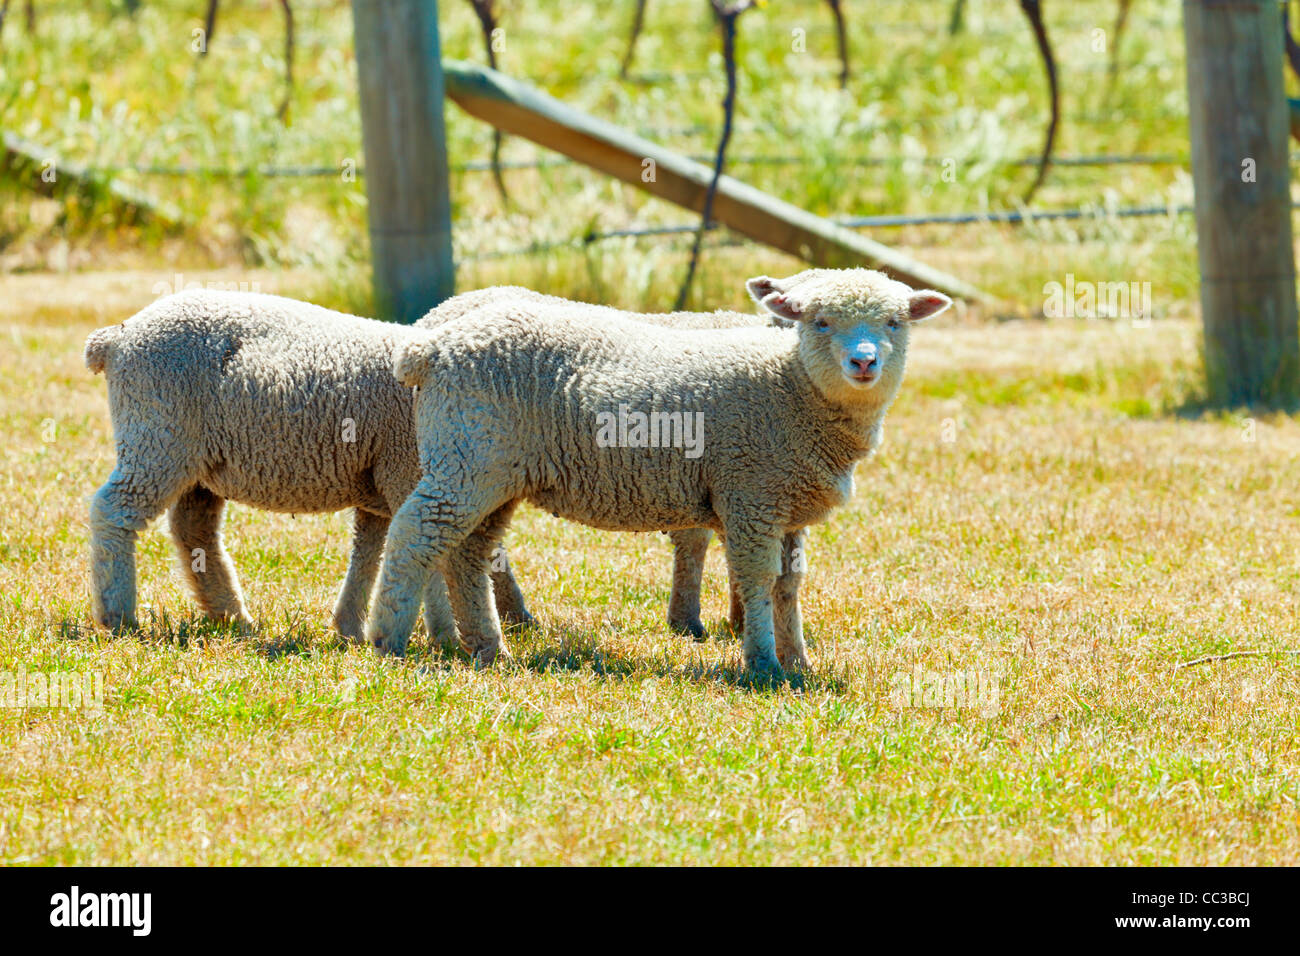 Babydoll-Schafe in einem Weinberg Stockfotografie - Alamy